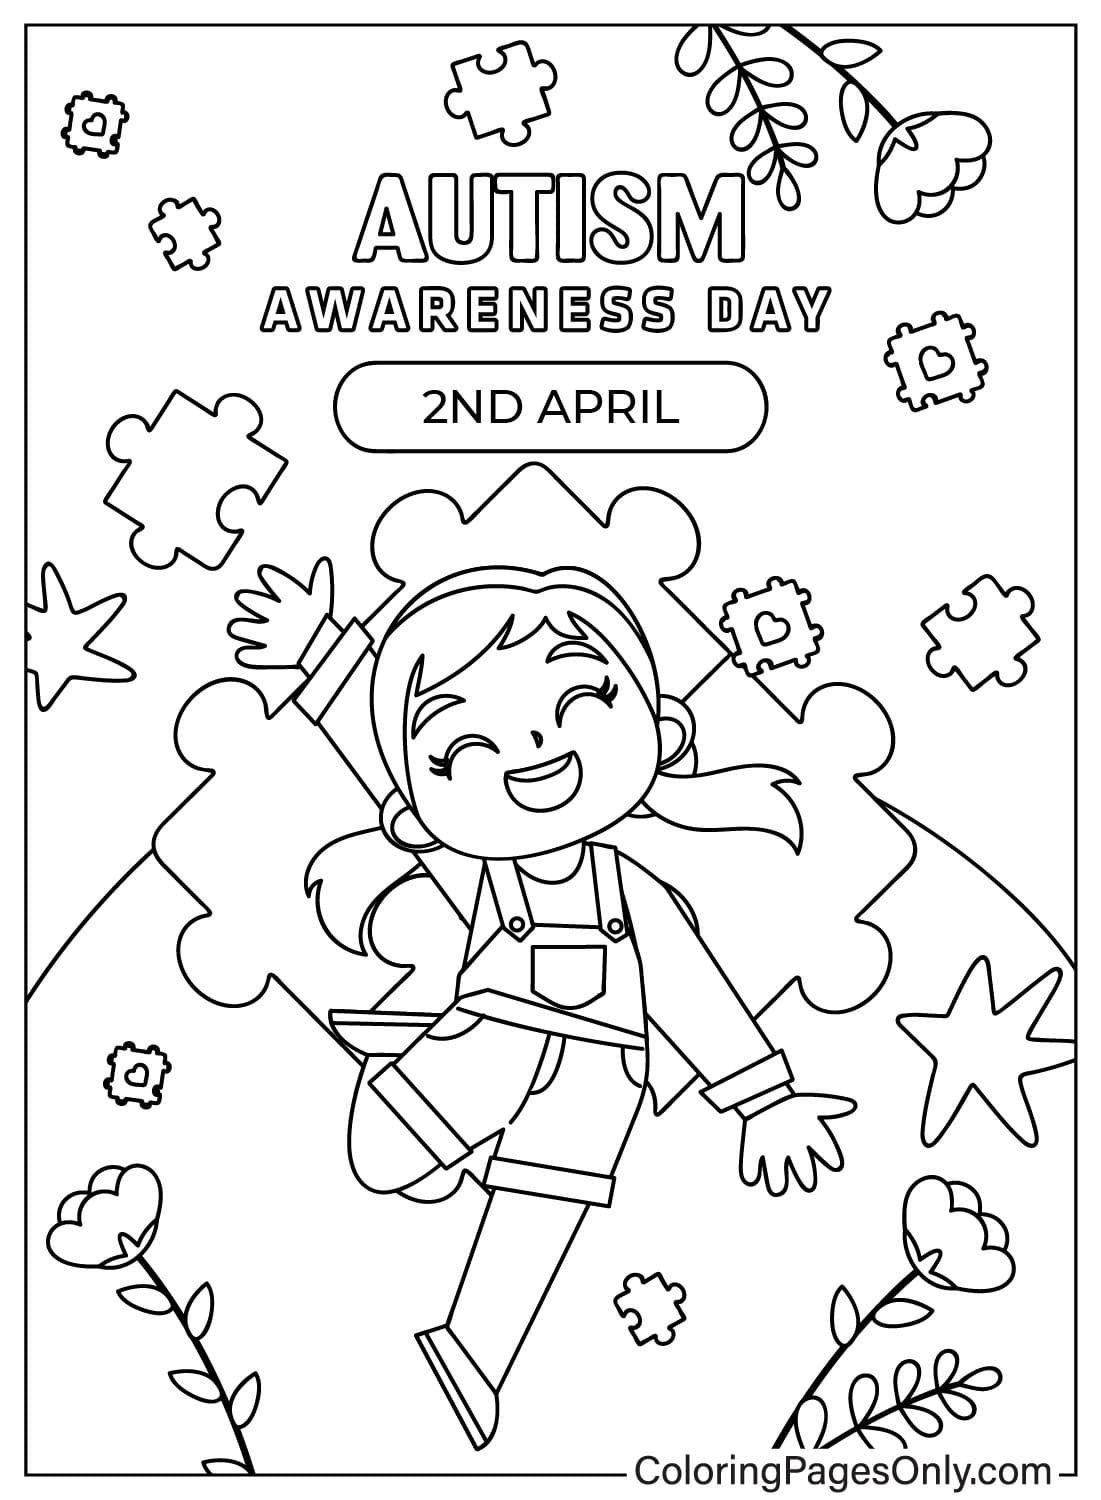 Рисунок раскраски, посвященной аутизму, из Всемирного дня распространения информации об аутизме